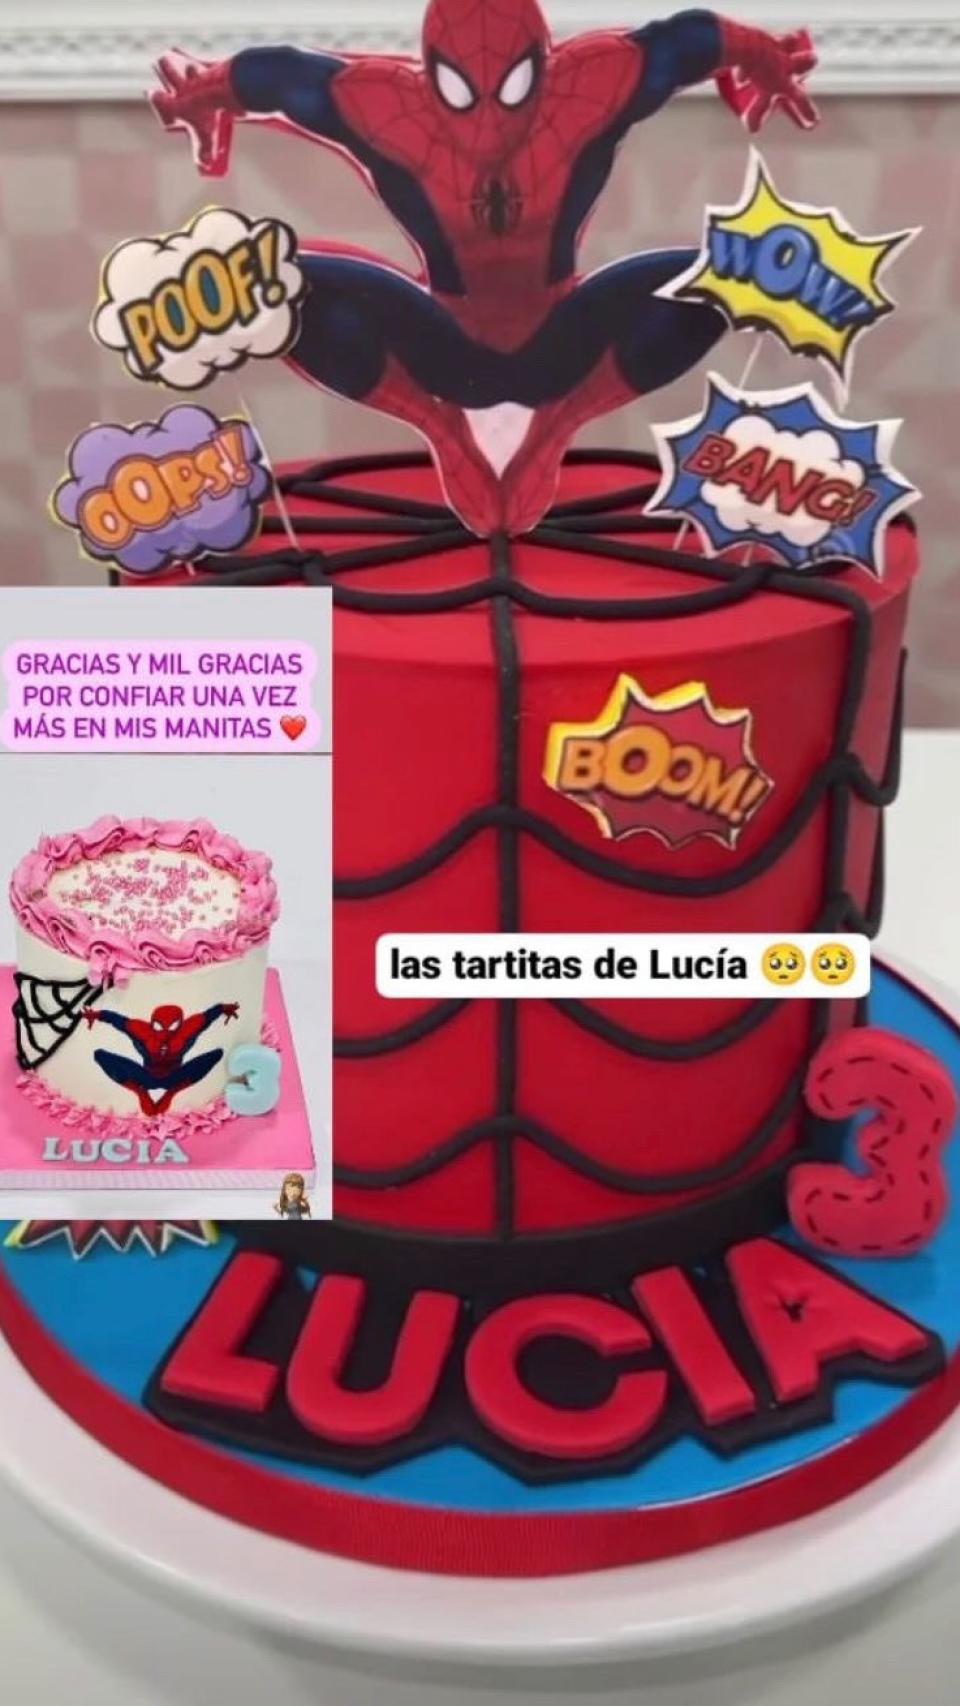 Las dos tartas, con motivo del cumpleaños de Lucía, que hizo la tienda de repostería Raymi Cakes.